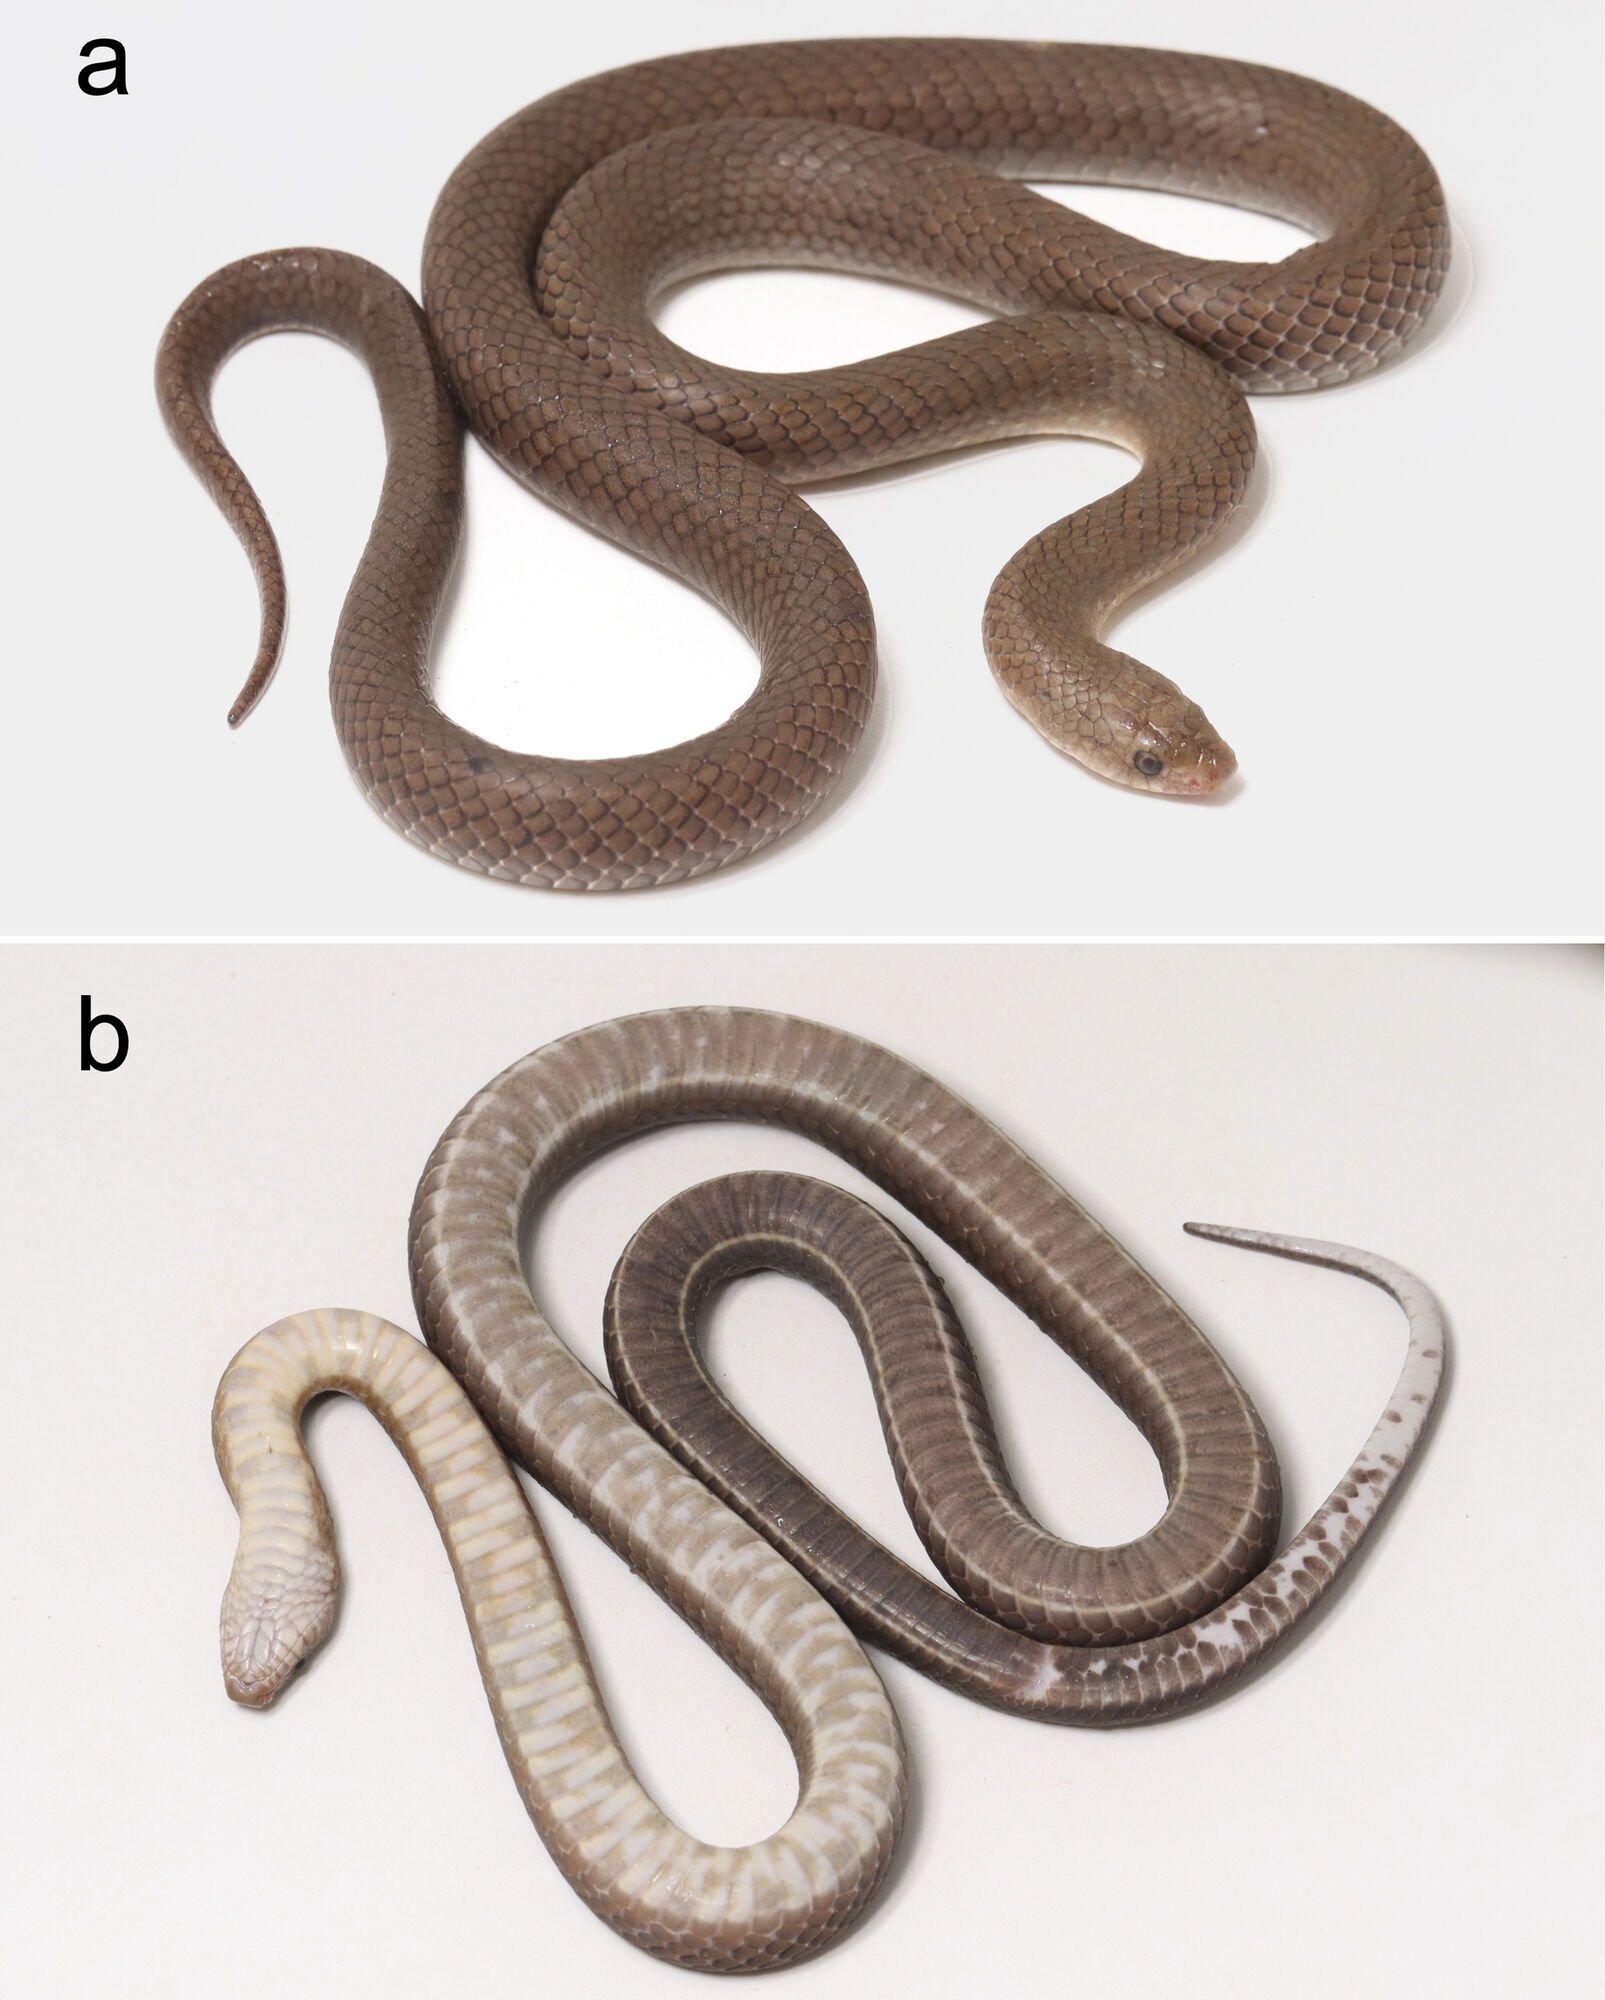 Новий вид змій виявили у Таїланді: мають ікла, схожі на леза (фото)